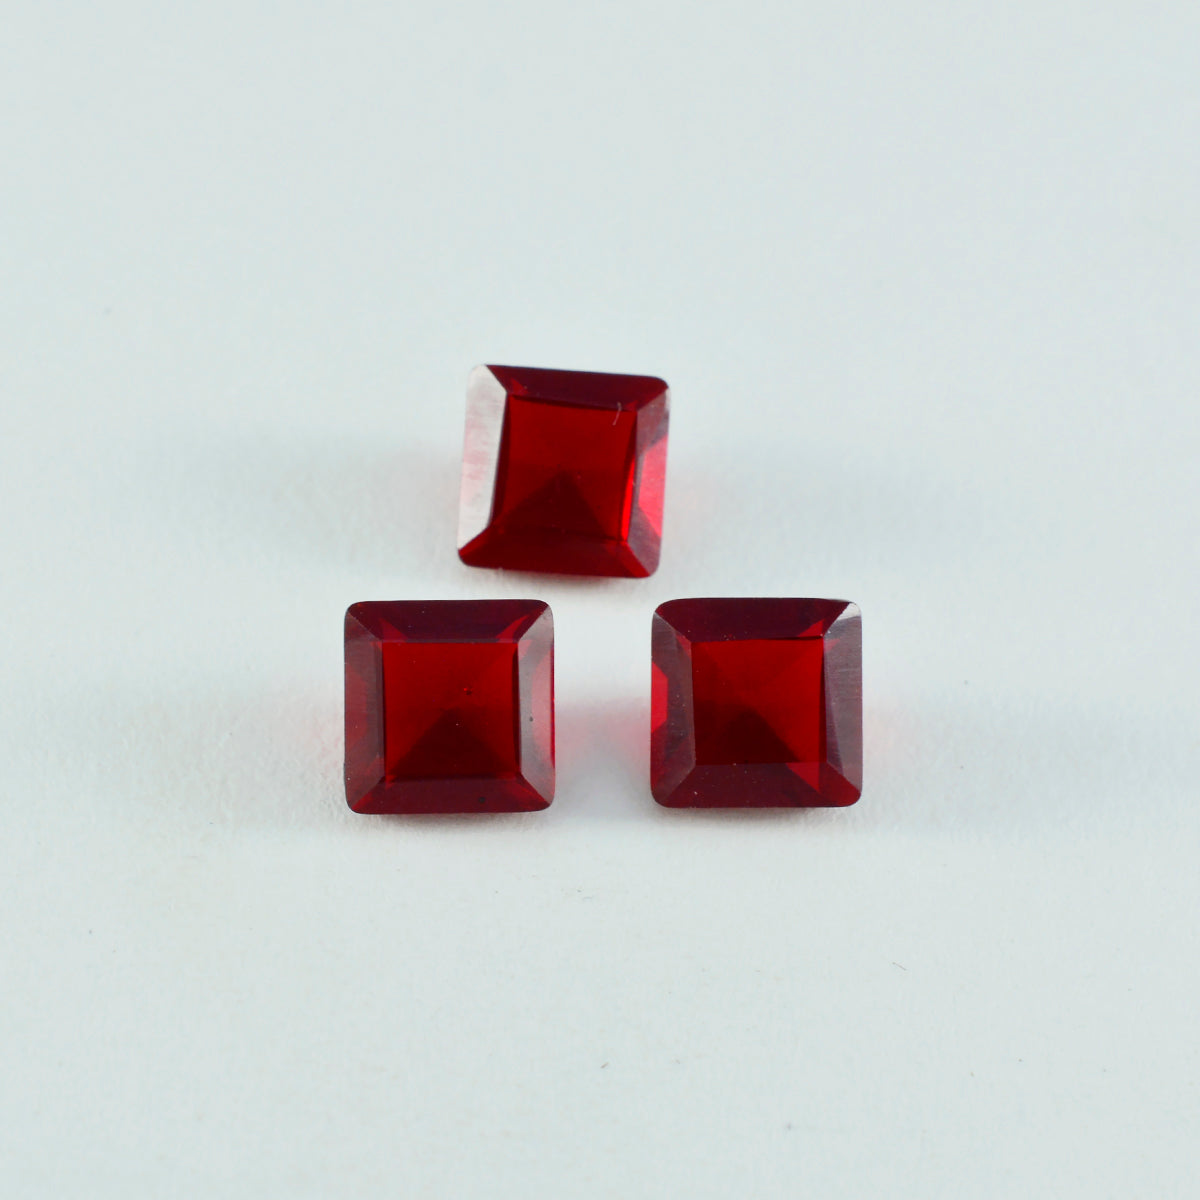 riyogems 1 шт., красный рубин, граненый 9x9 мм, квадратная форма, отличное качество, свободный драгоценный камень